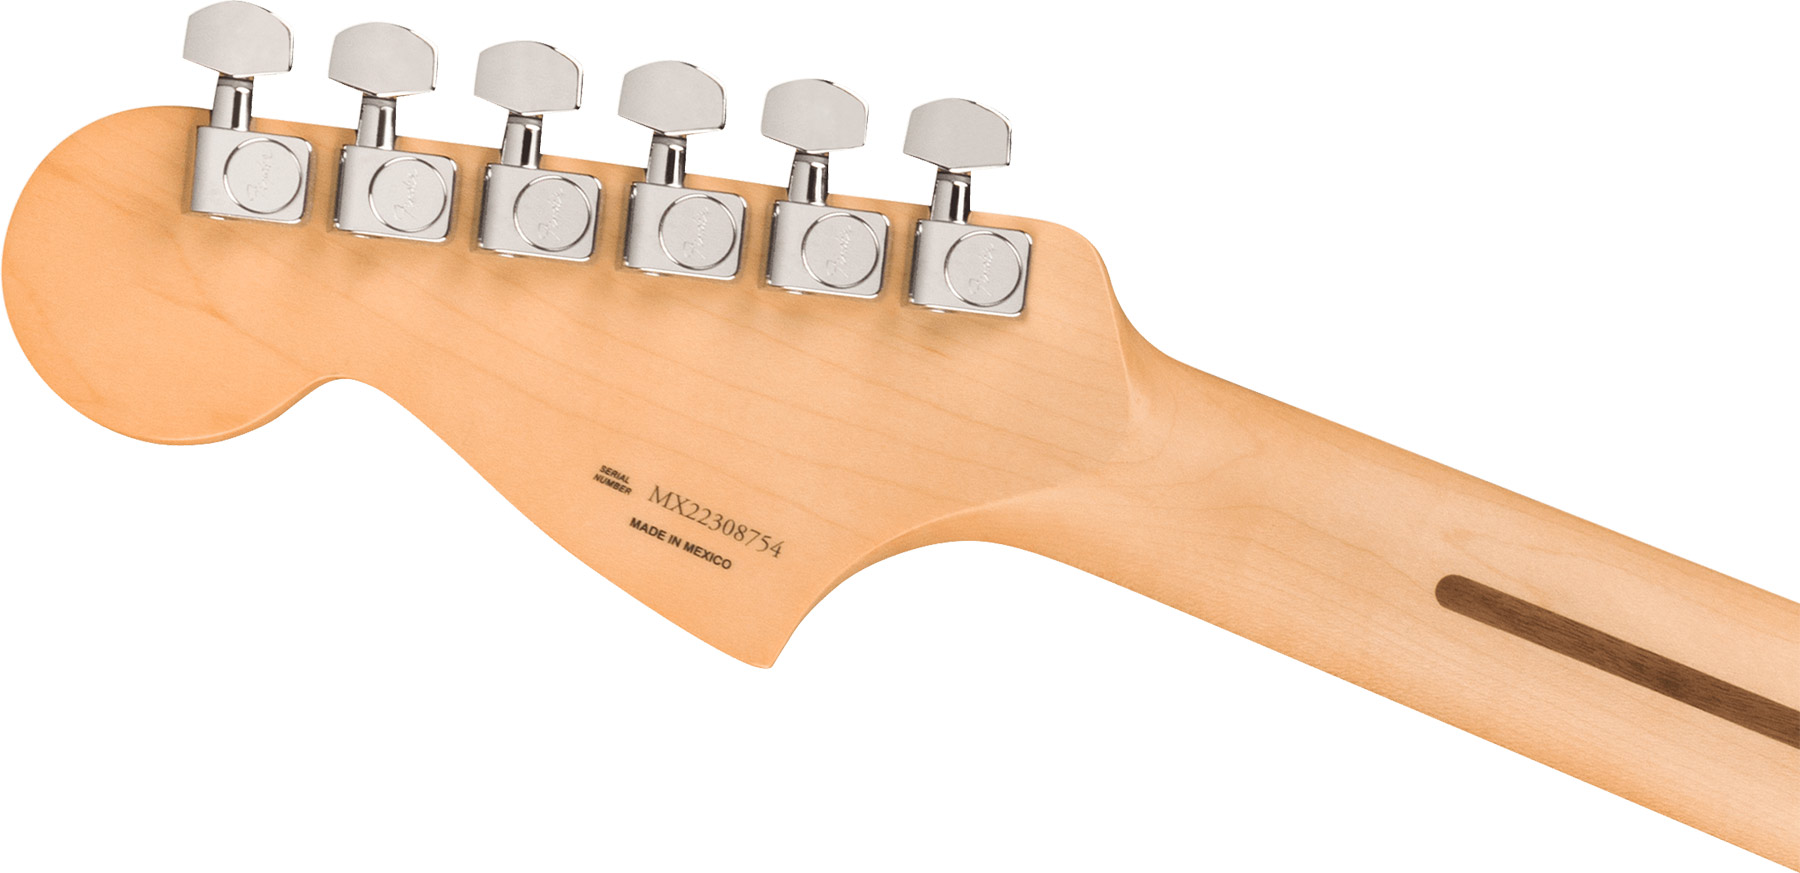 Fender Jaguar Player Mex 2023 Hs Trem Pf - Candy Apple Red - Retro-Rock-E-Gitarre - Variation 3